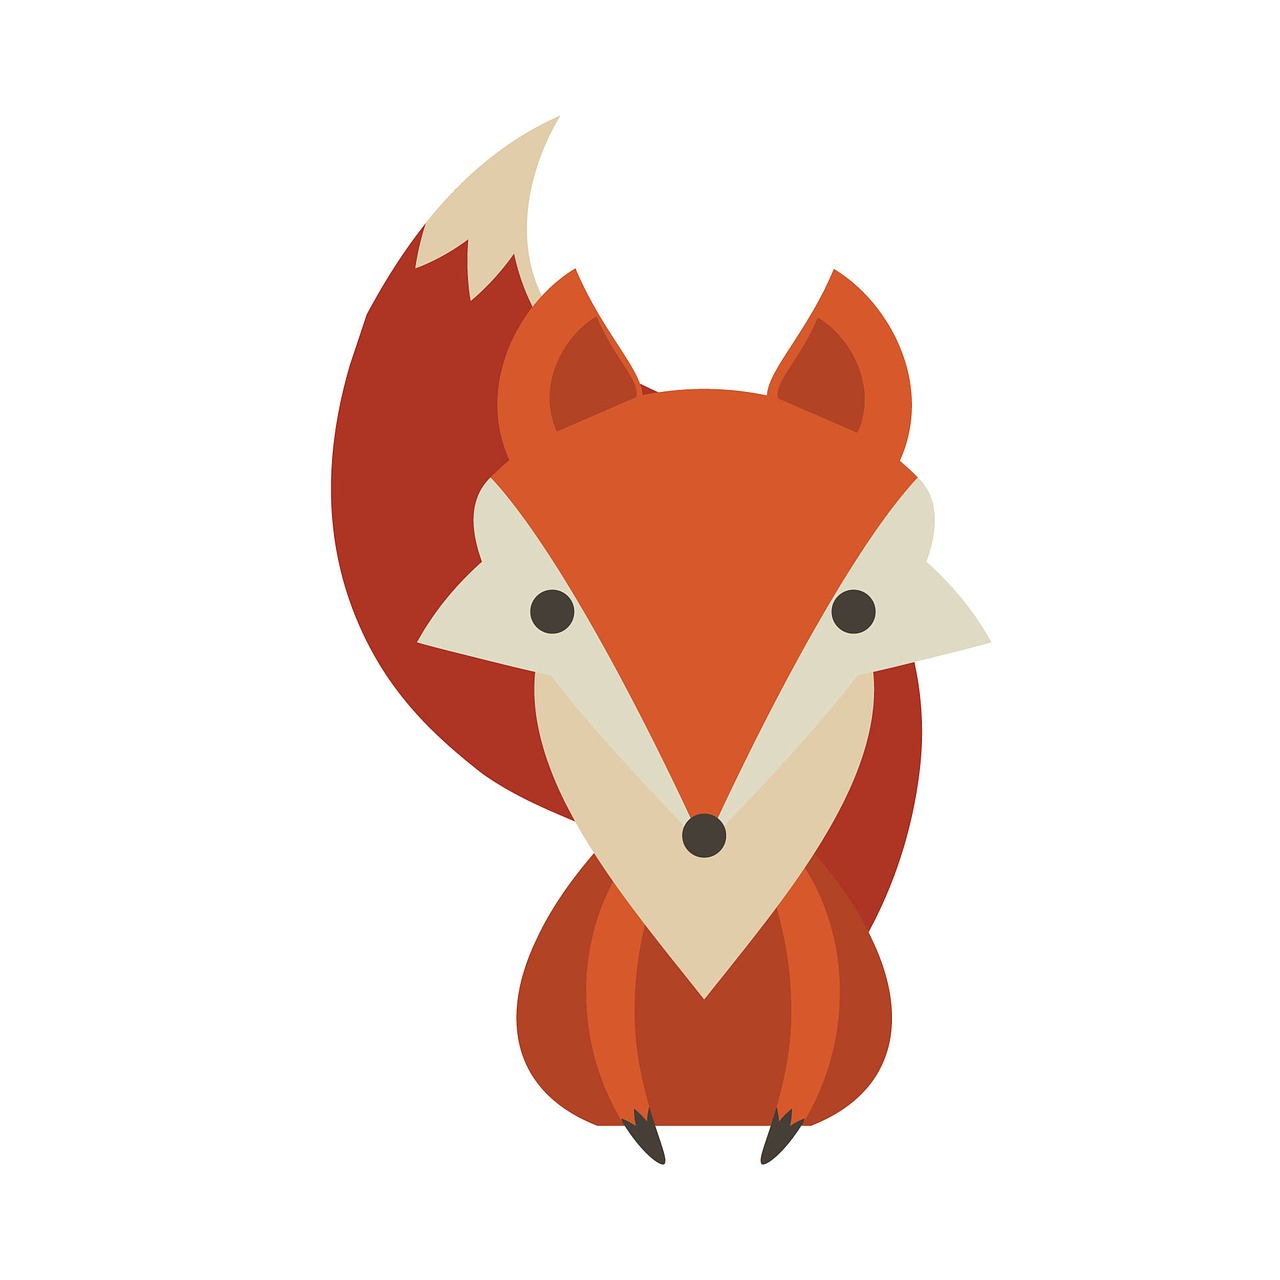 Classic fox. Знак лисы. Лиса символ. Лиса в иллюстраторе. Символ головы лисы.